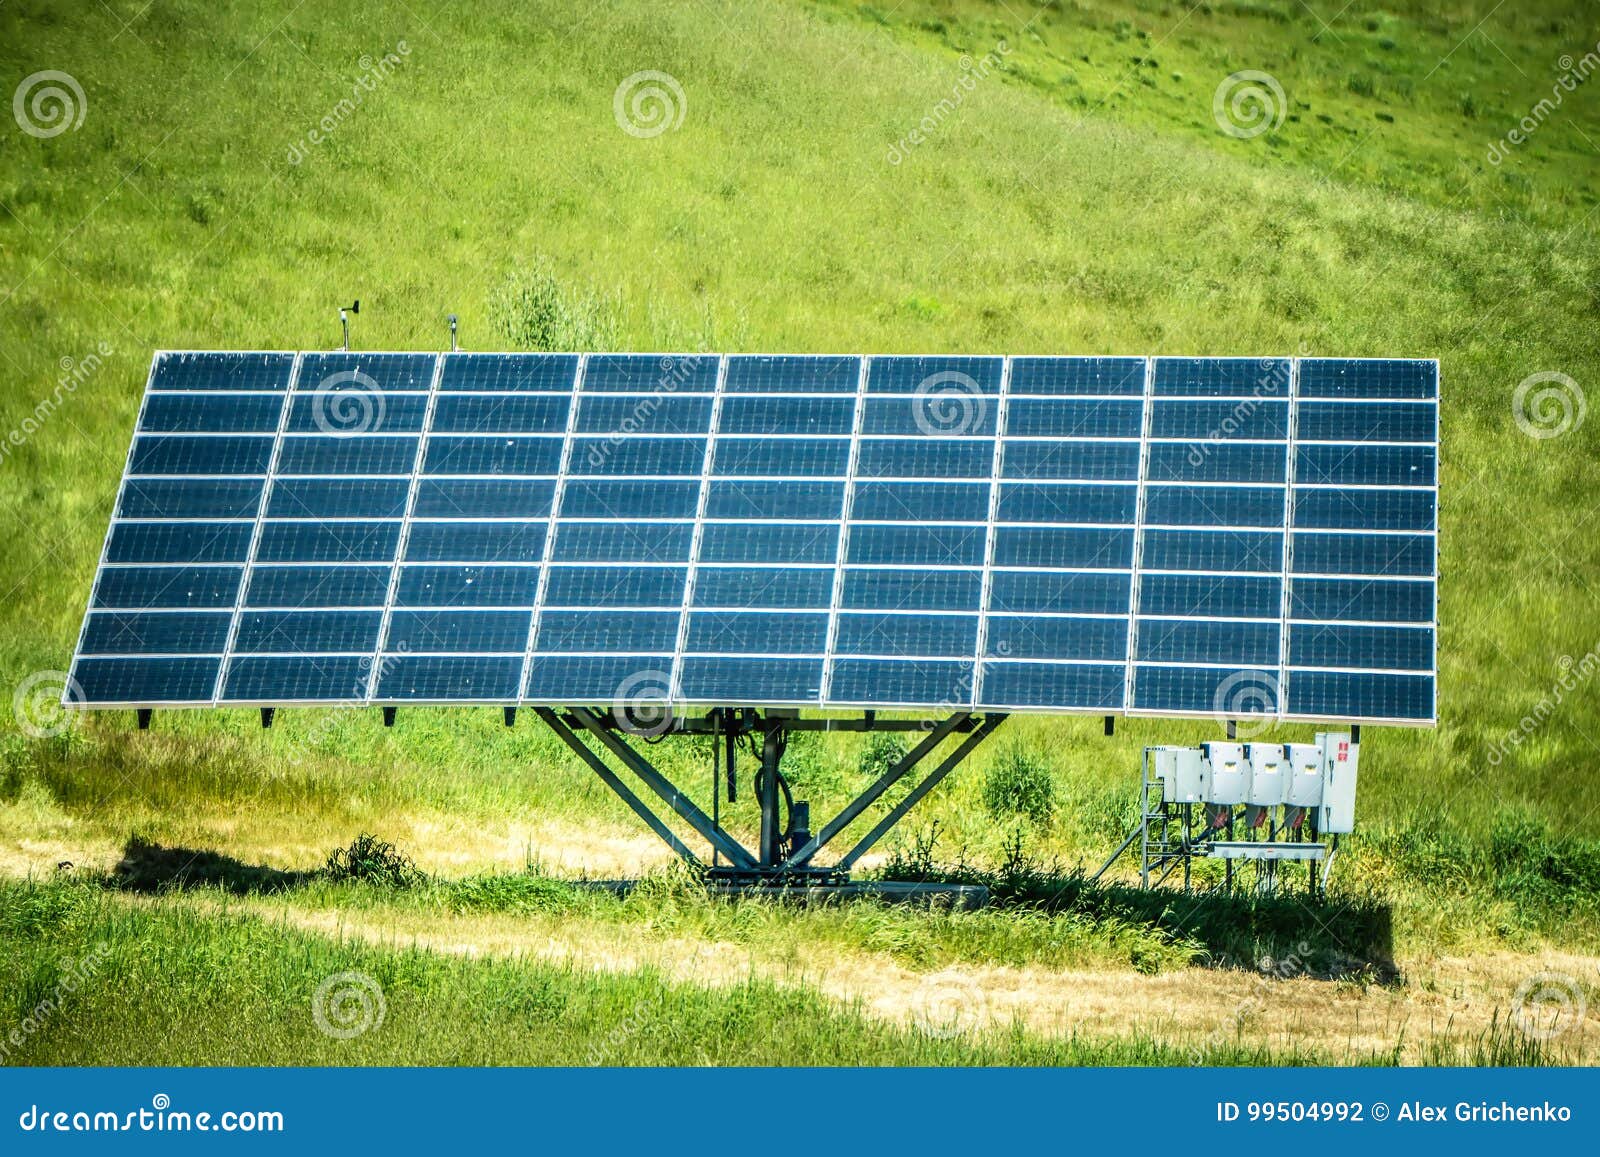 Single Solar Panel Making Energy on Sunny Day Stock Photo - Image of